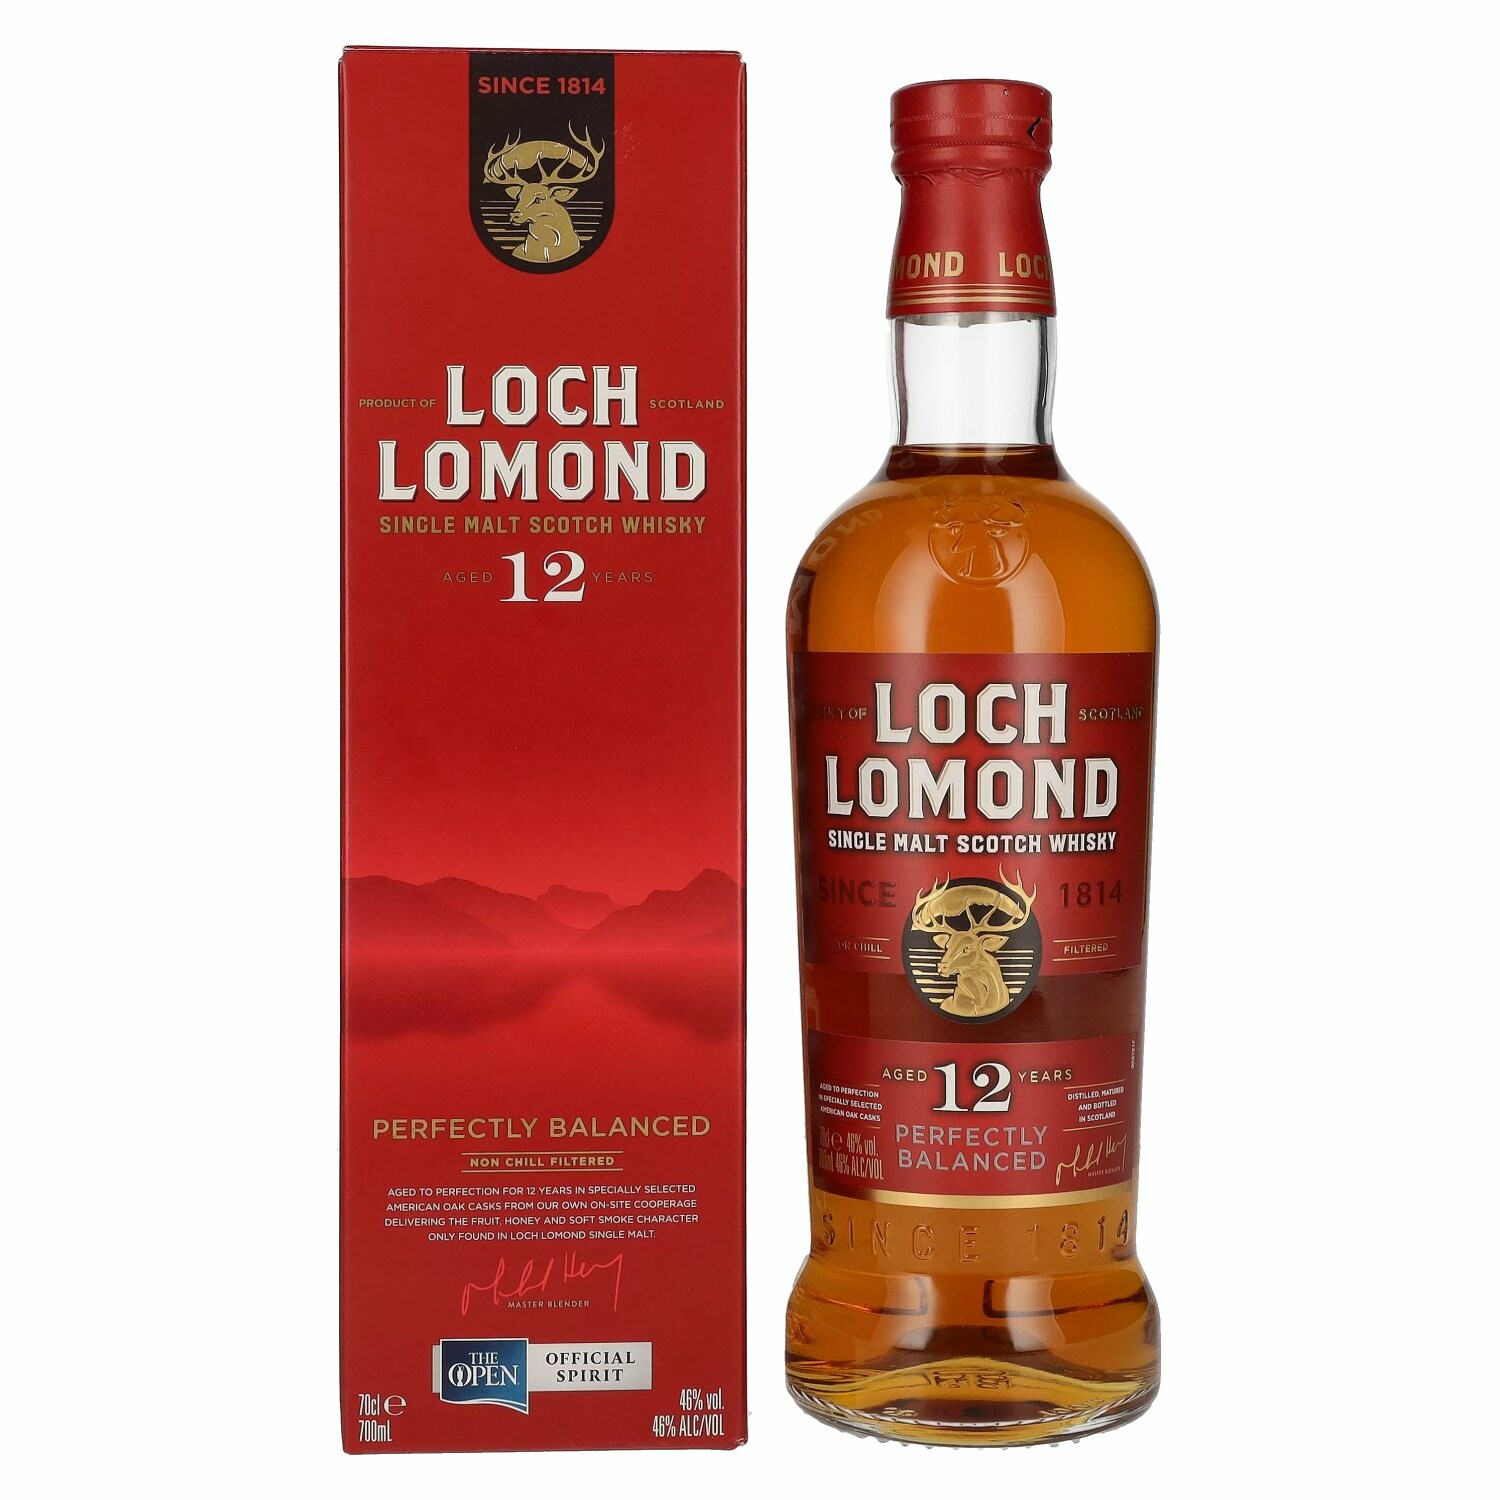 Loch Lomond 12 Years Old Single Malt The Open 46% Vol. 0,7l in Giftbox